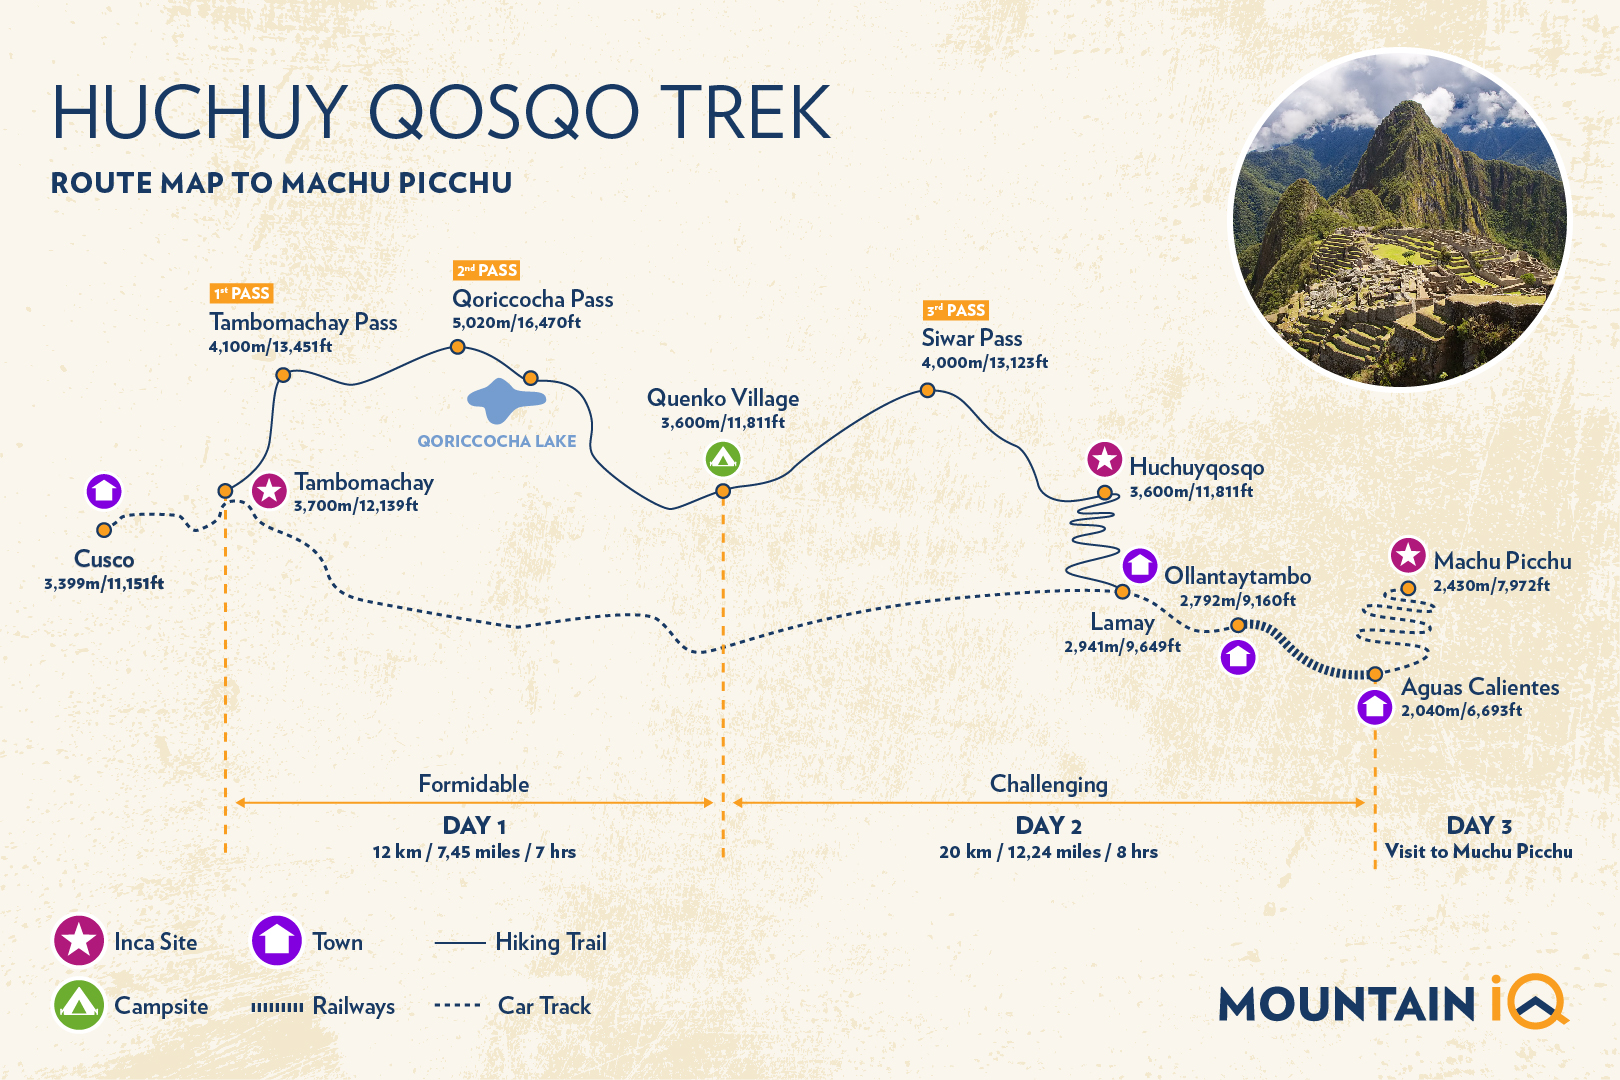 Huchuy Qosqo trek Map